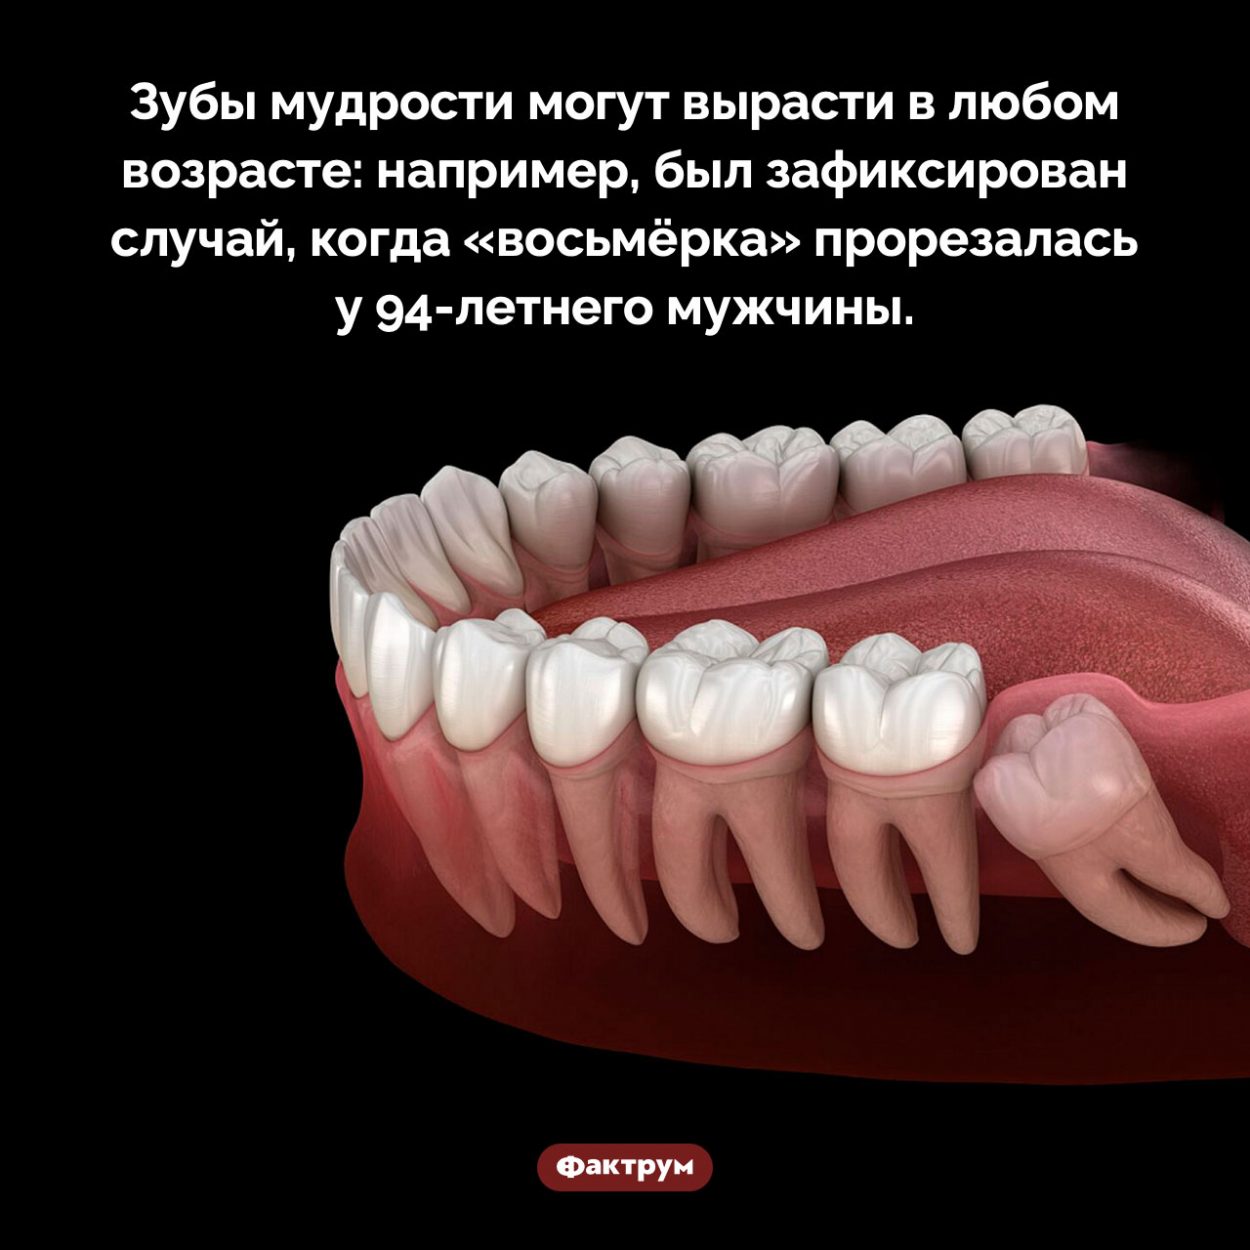 Во сколько лет растут зубы мудрости. Зубы мудрости могут вырасти в любом возрасте: например, был зафиксирован случай, когда «восьмёрка» прорезалась у 94-летнего мужчины.